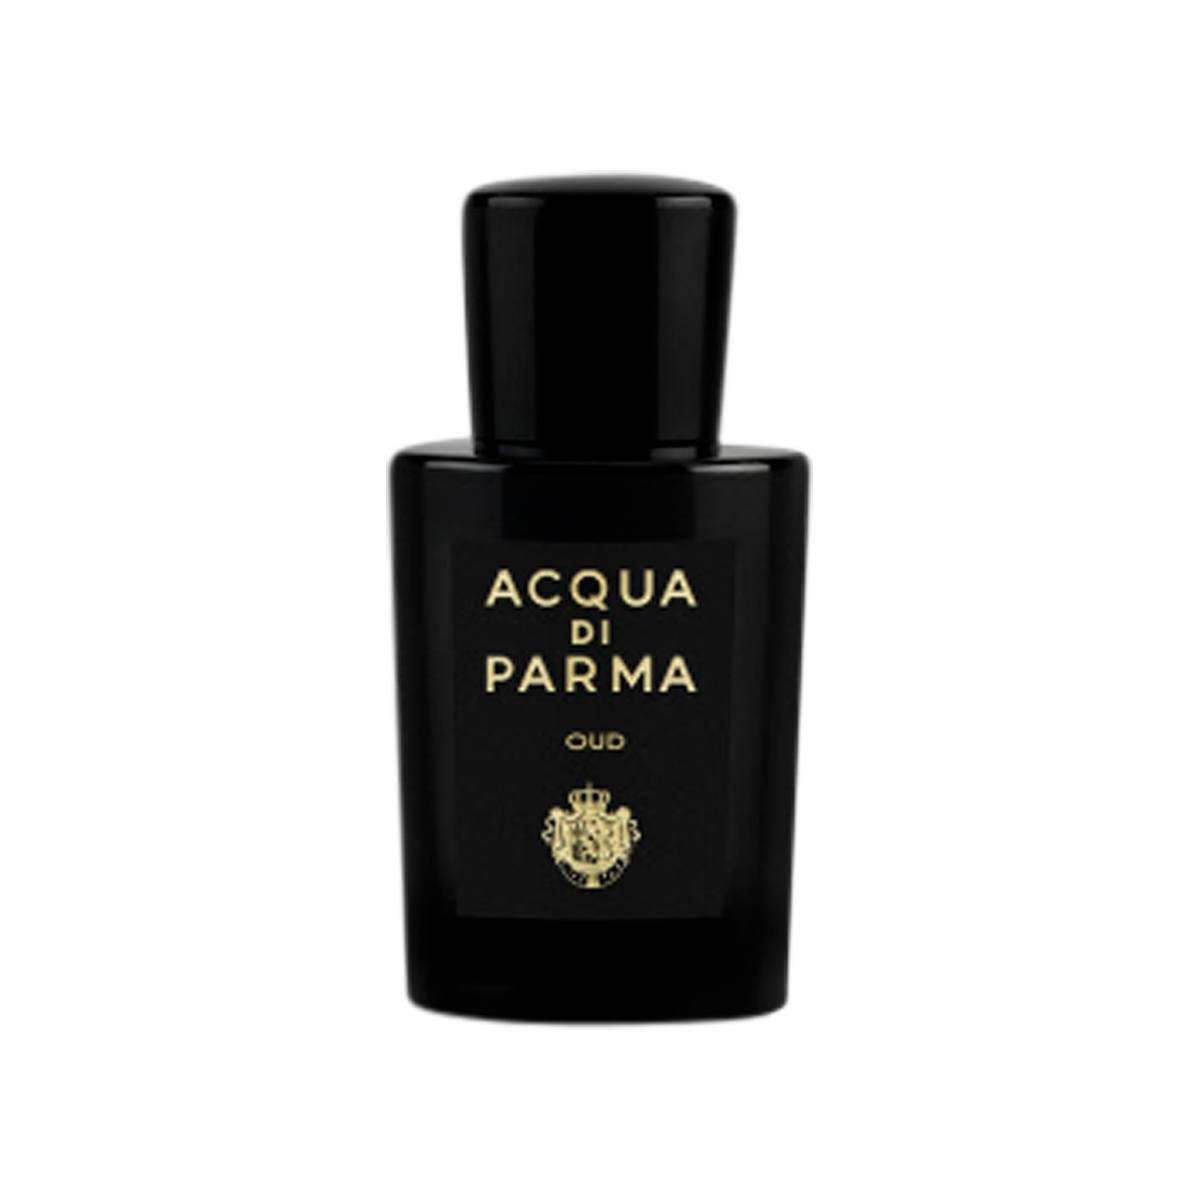 Acqua di Parma - Oud Eau de Parfum